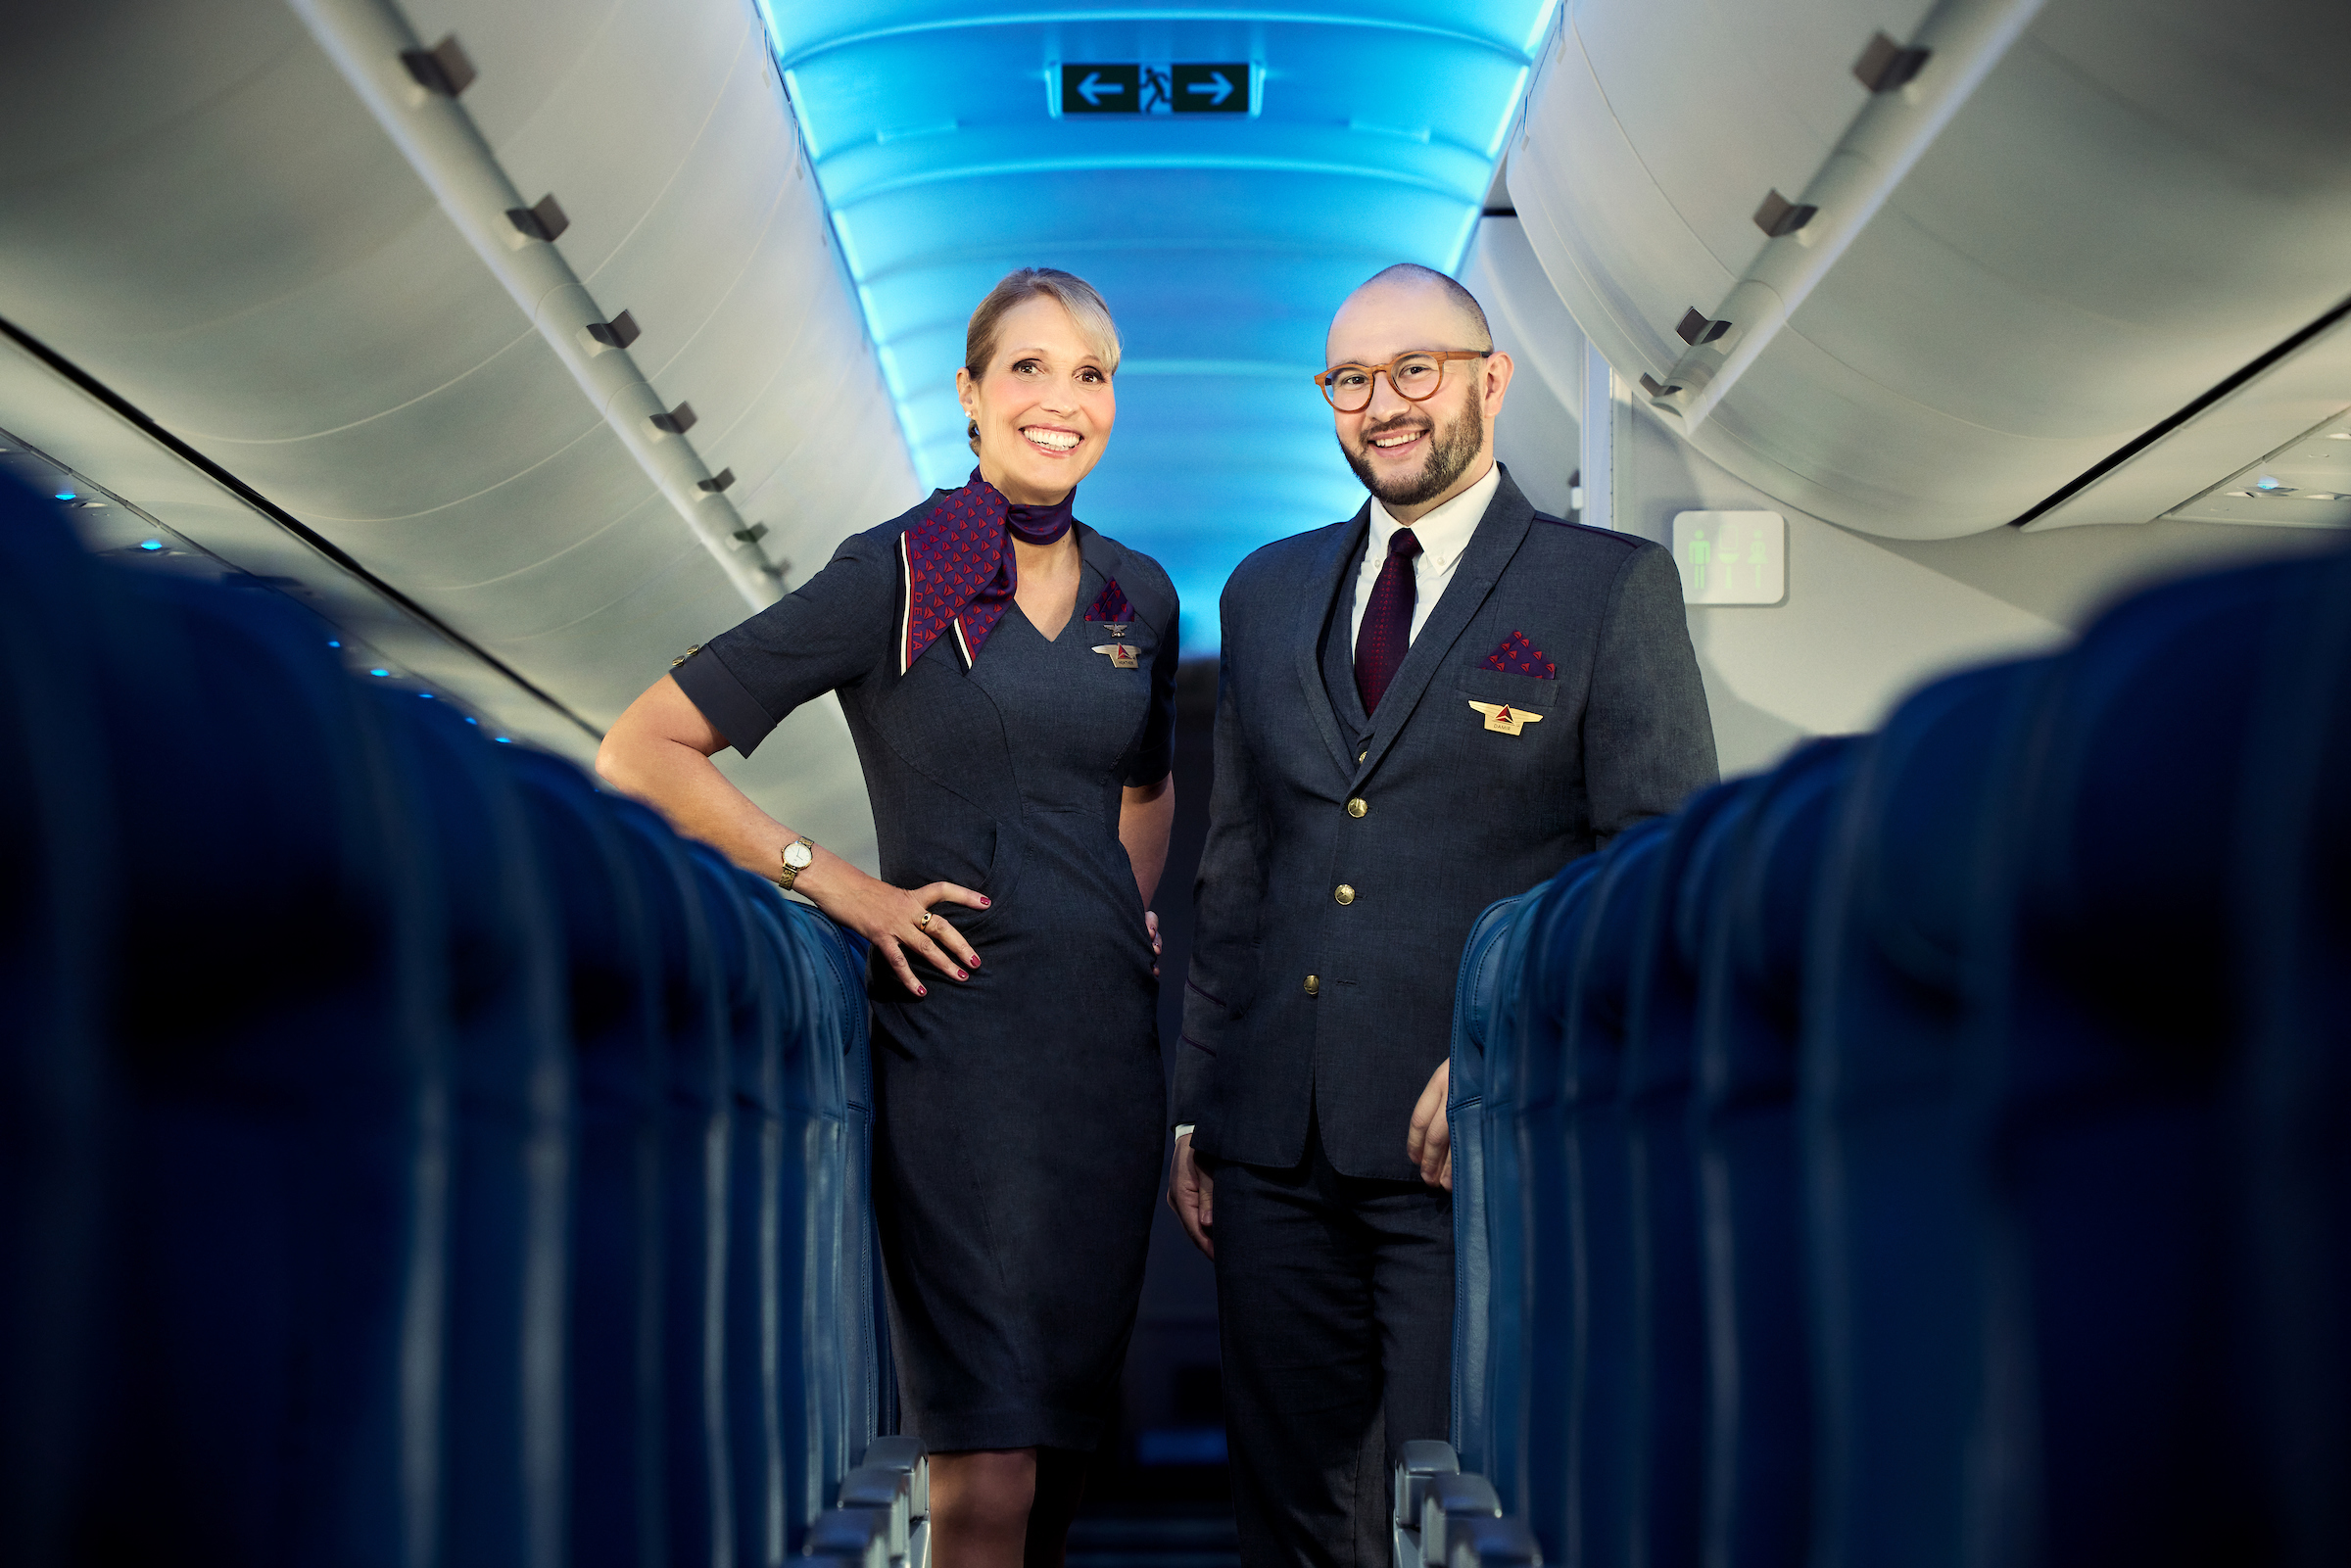 Airlines Making Flight Attendants' Uniforms Gender-Neutral: Alaska